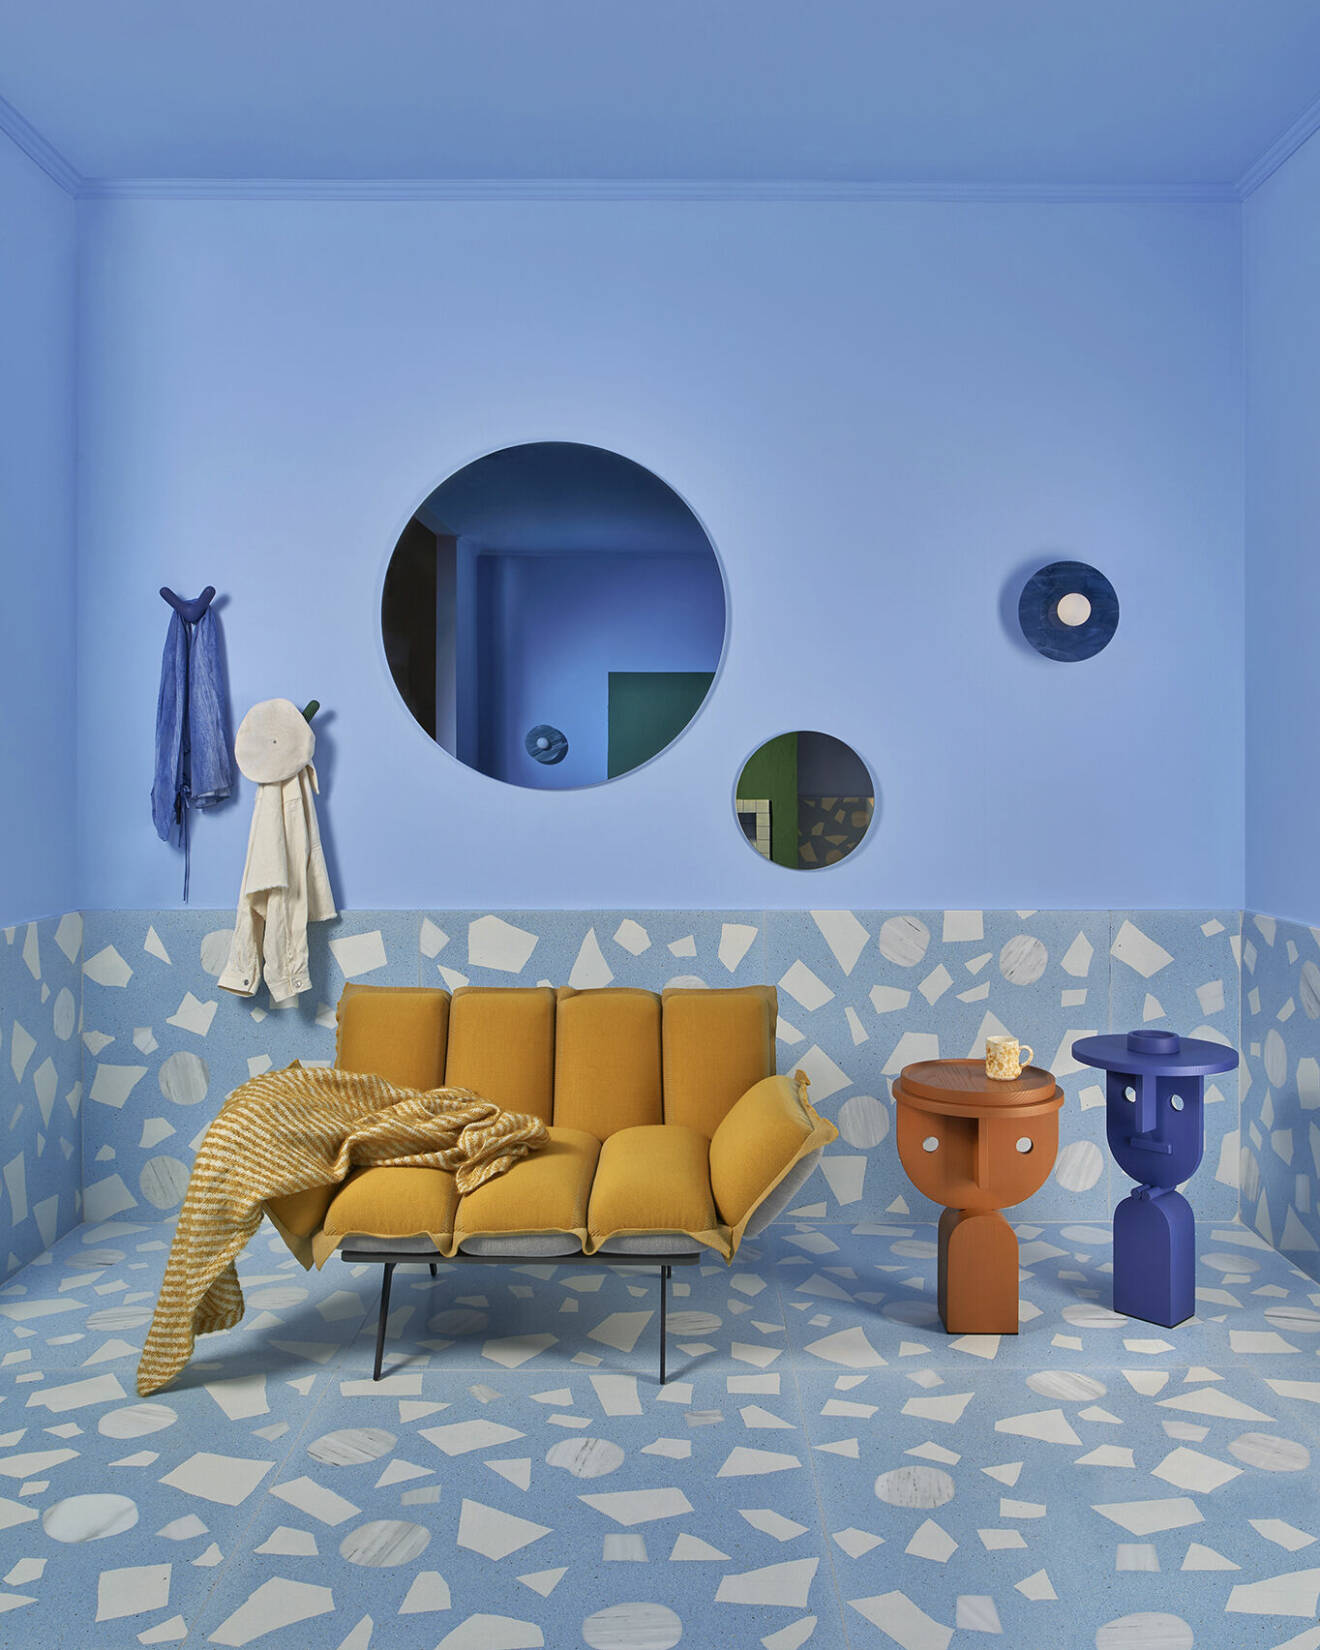 Tekla Evelina Severin är en inredningsarkitekt och kolorist vars djärva färgkompositioner lyfter varje rum och objekt hon rör vid.